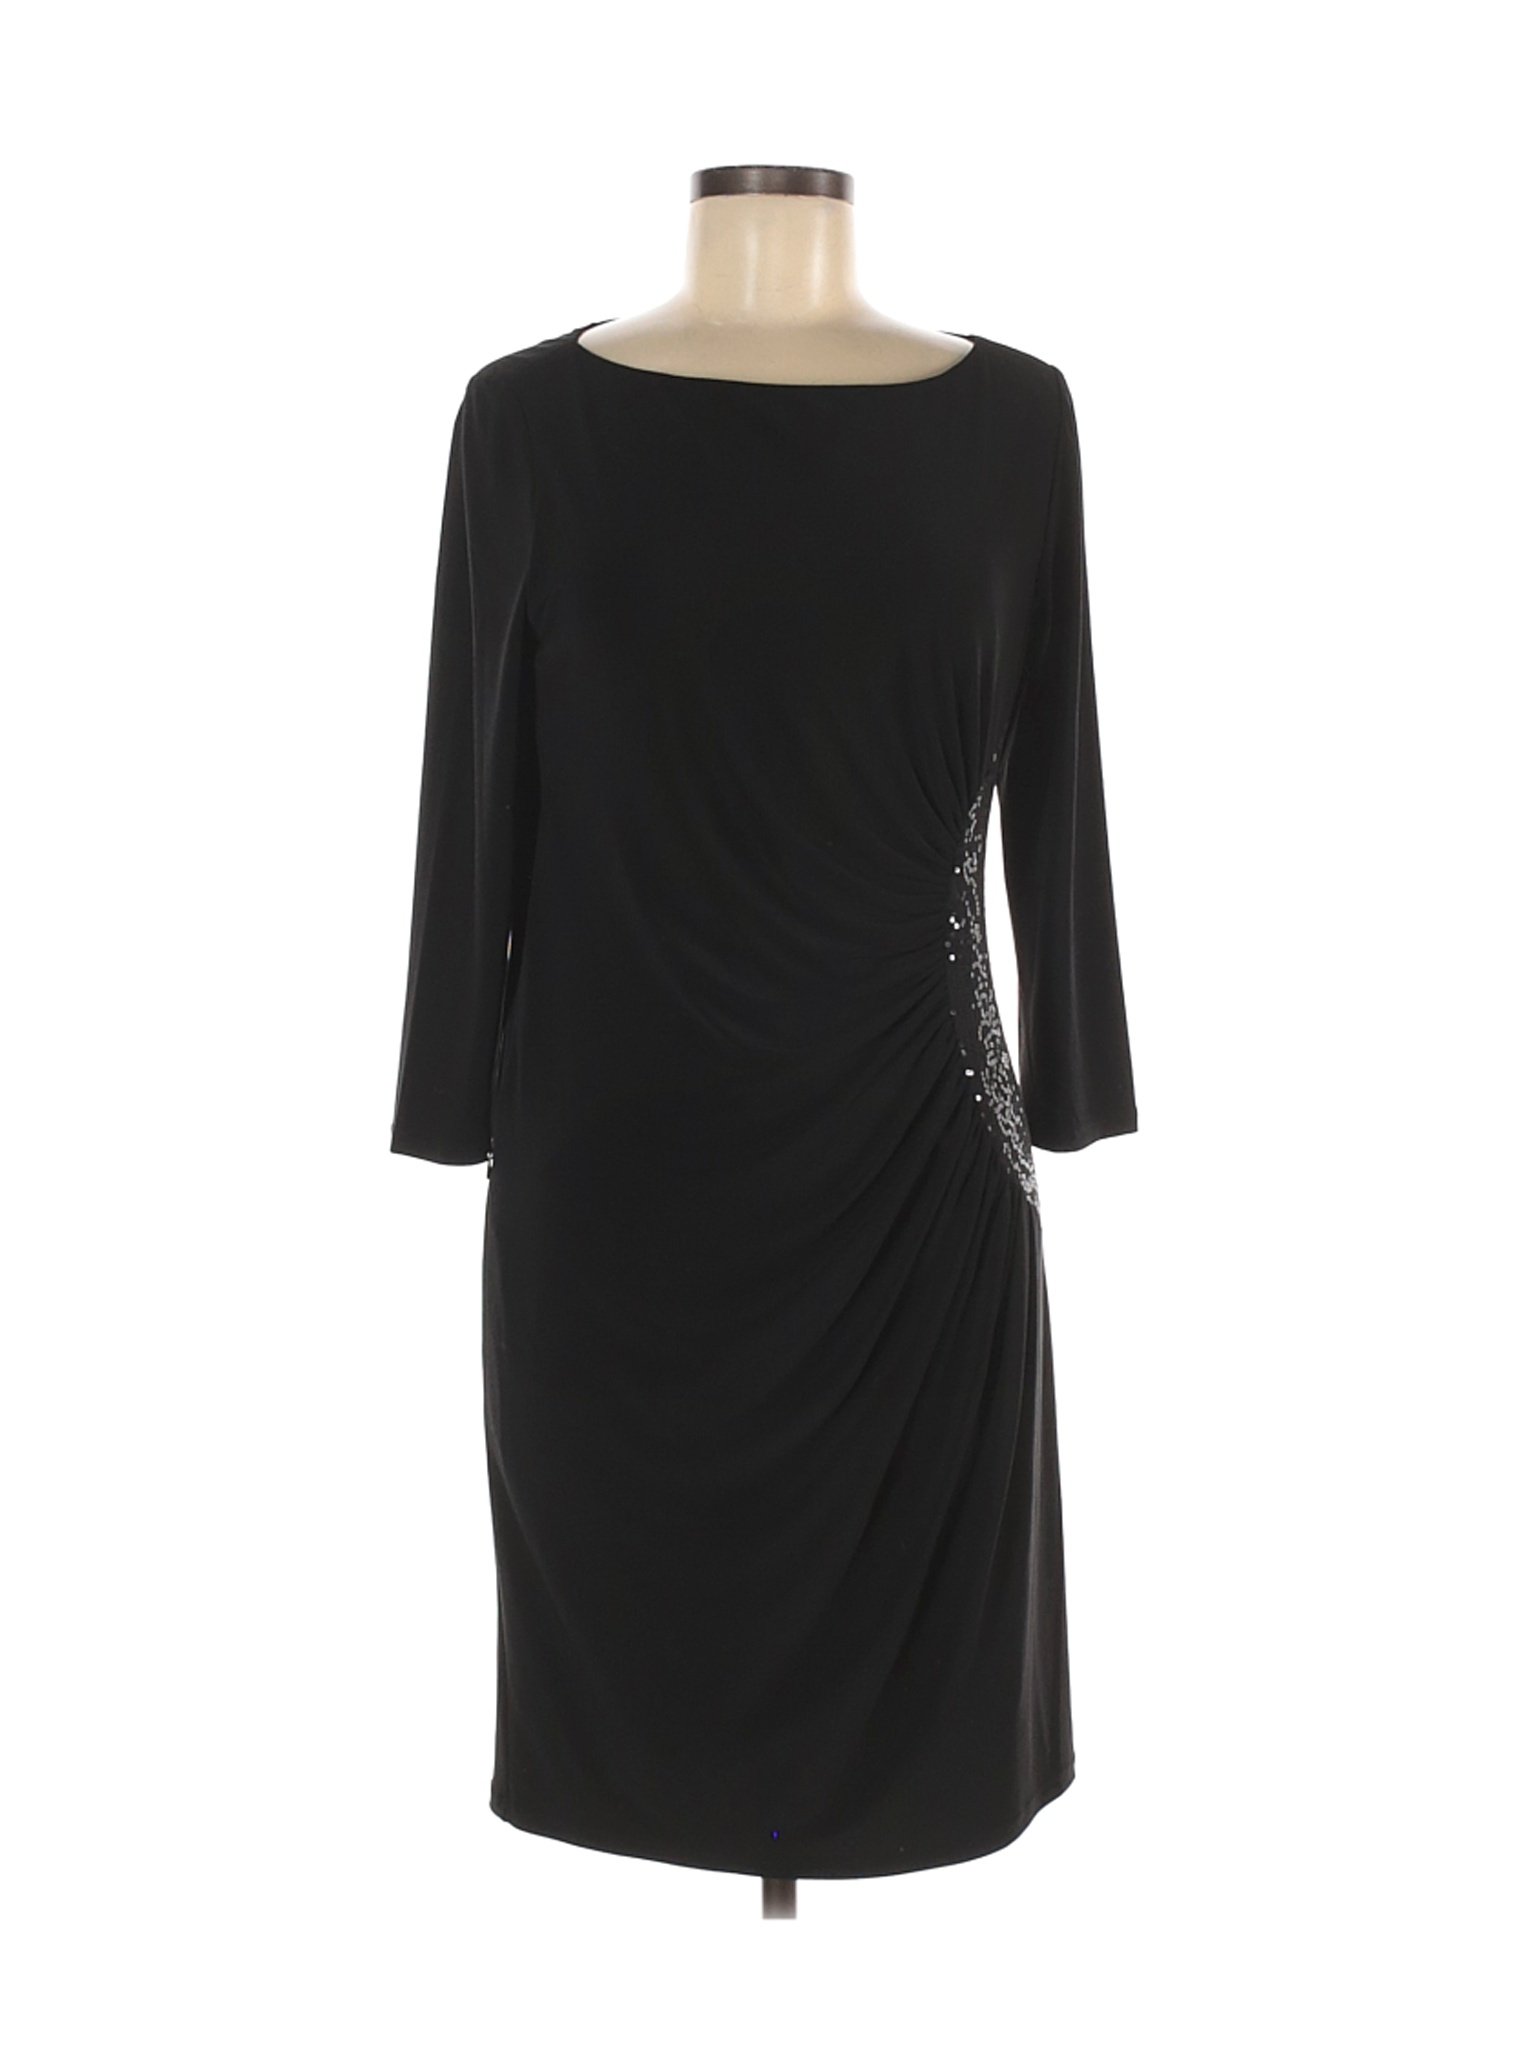 Nine West Women Black Casual Dress 8 | eBay